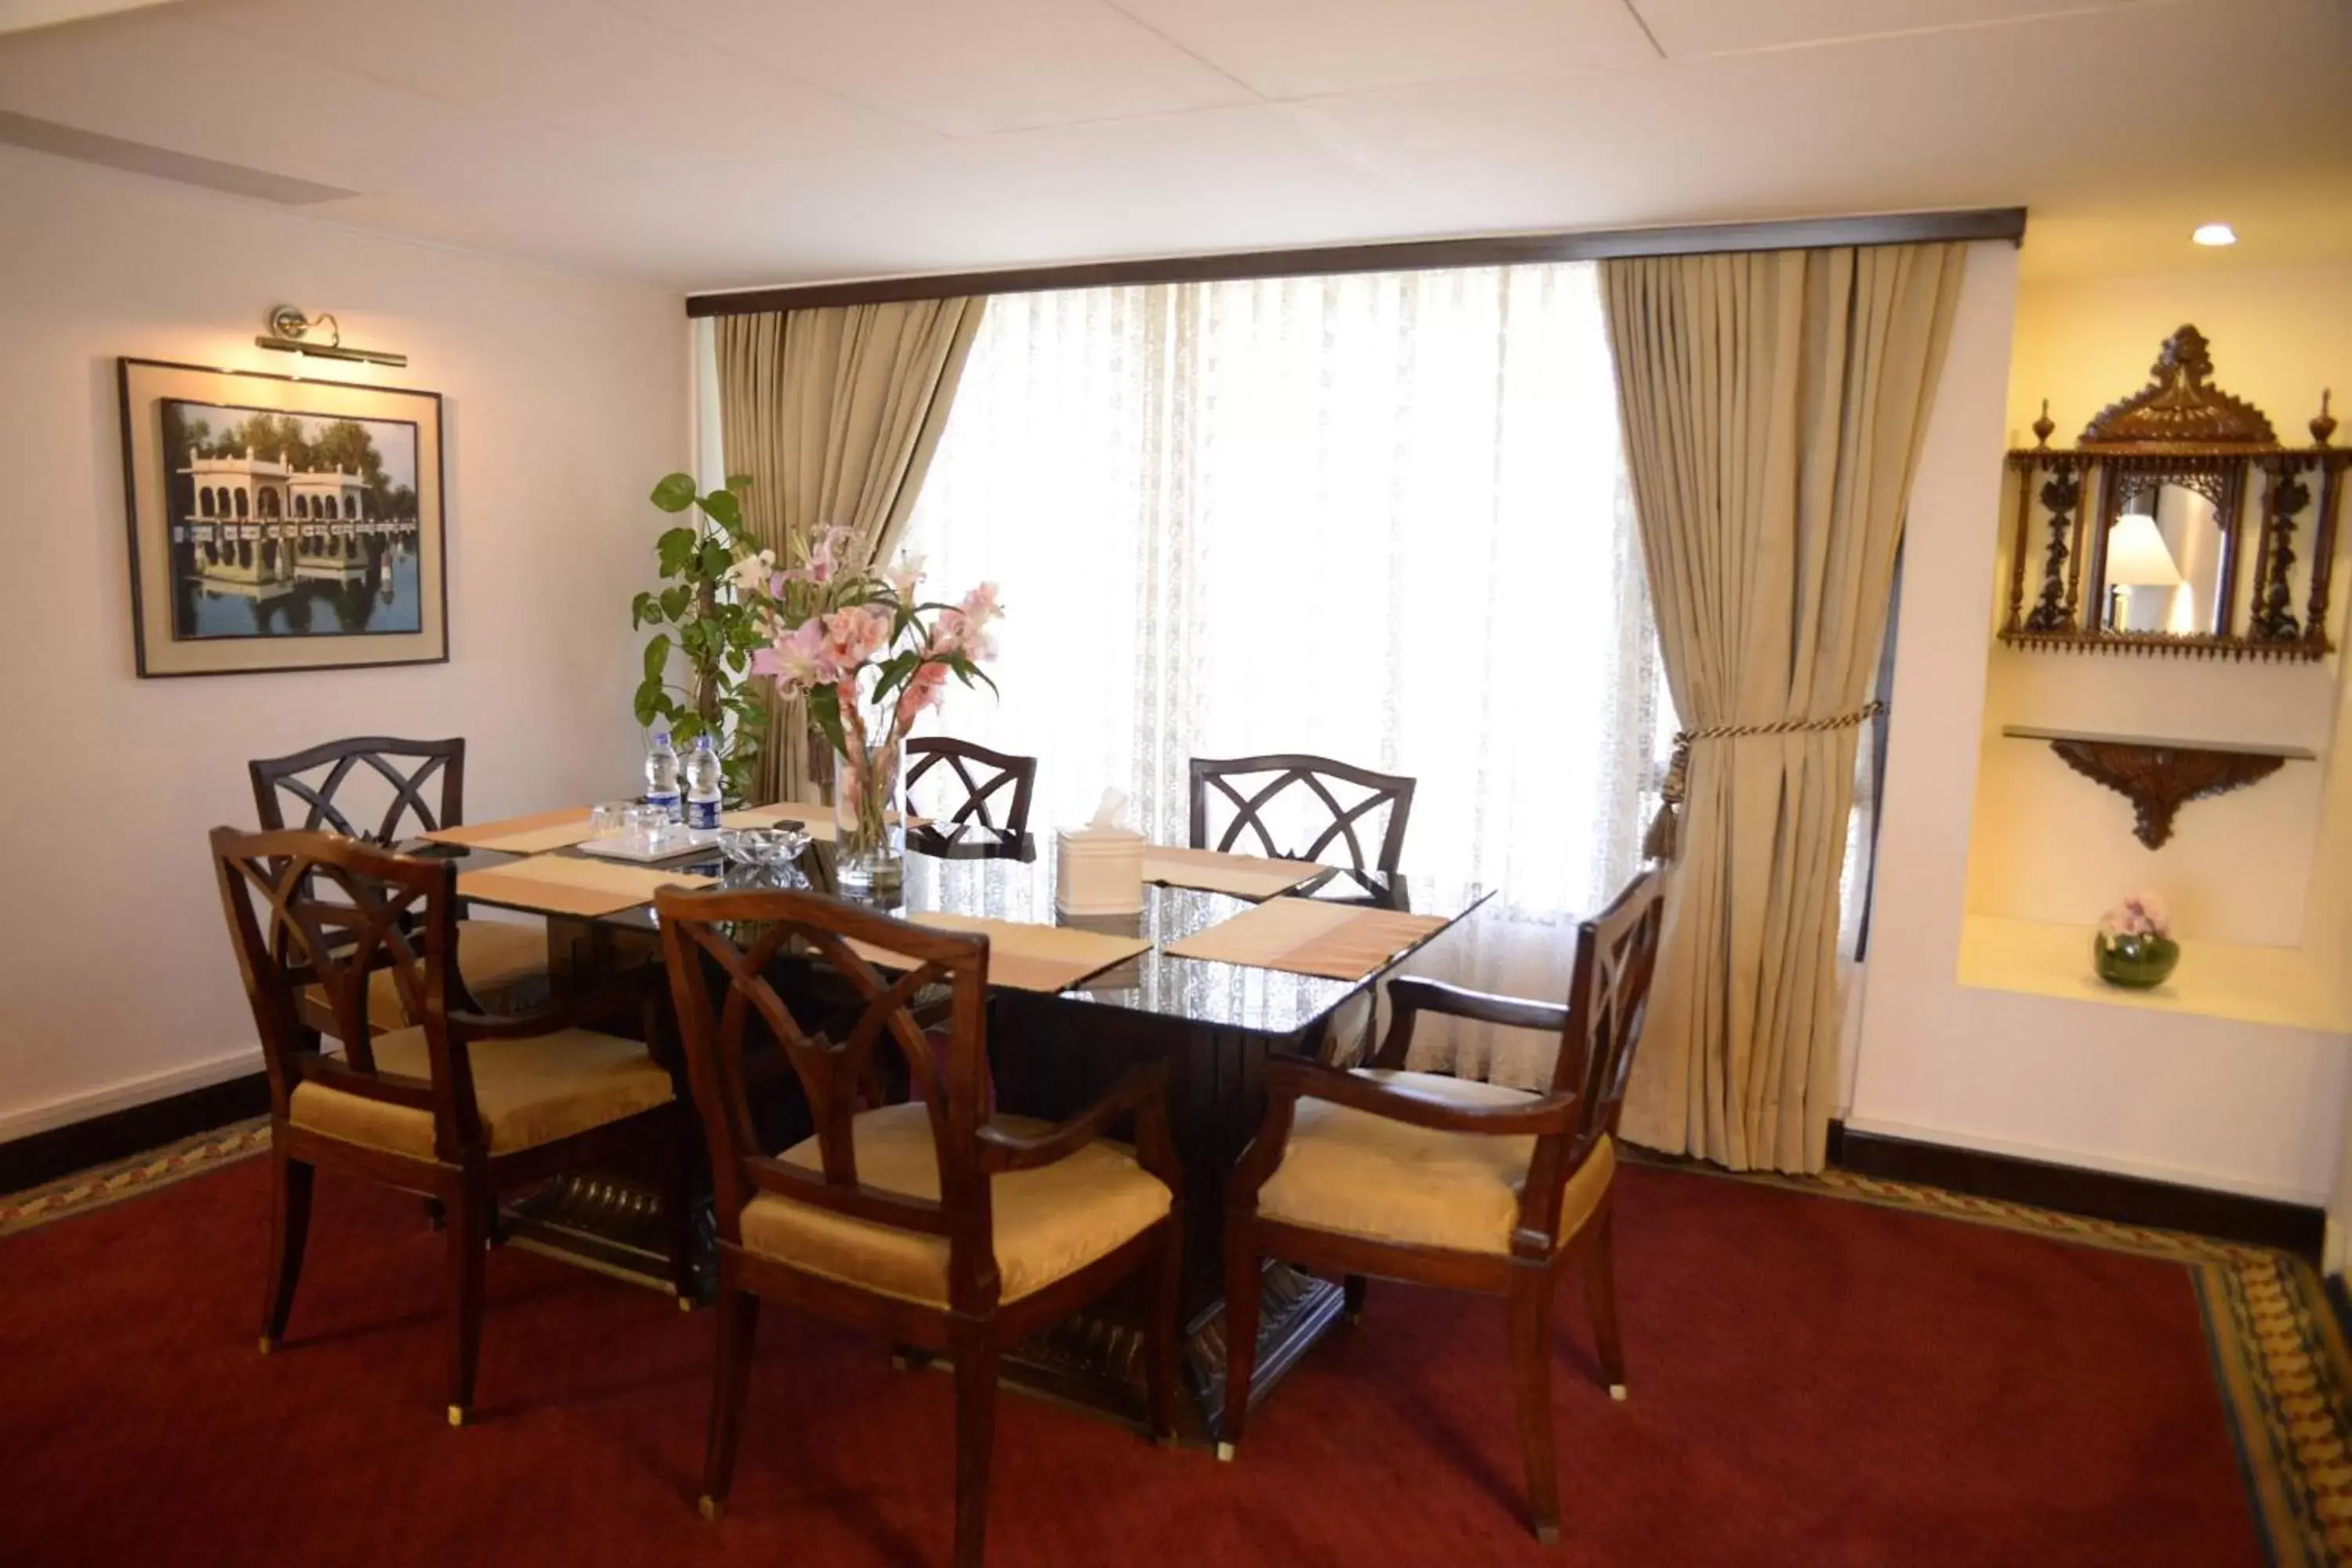 Bedroom, Dining Area in Karachi Marriott Hotel